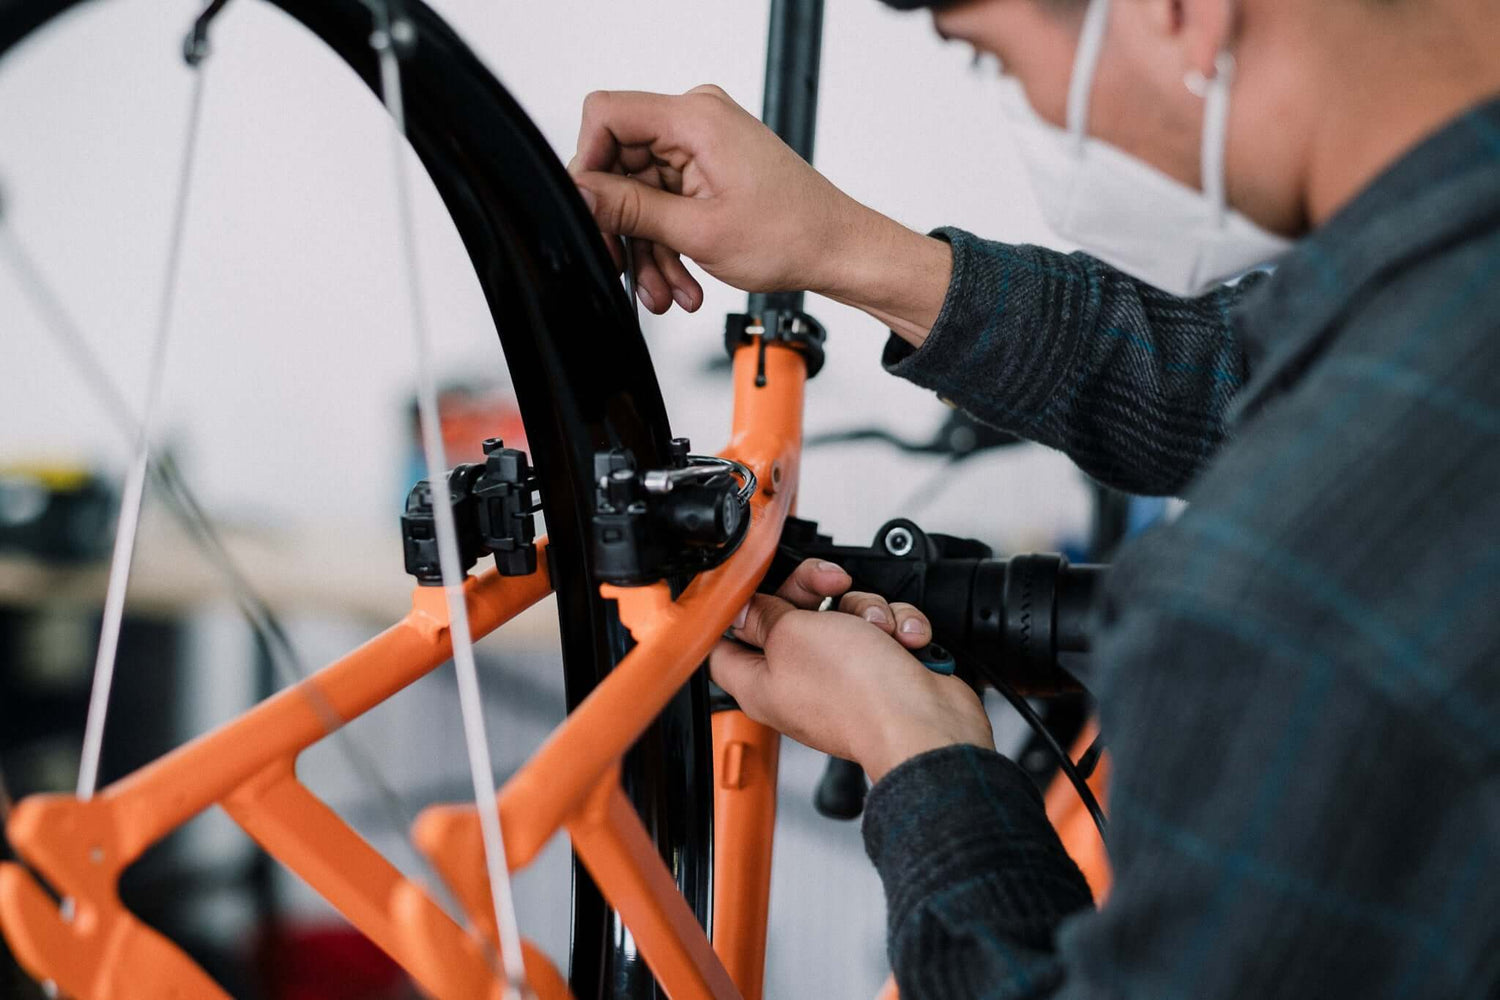 B2B e bike repair and maintenance services